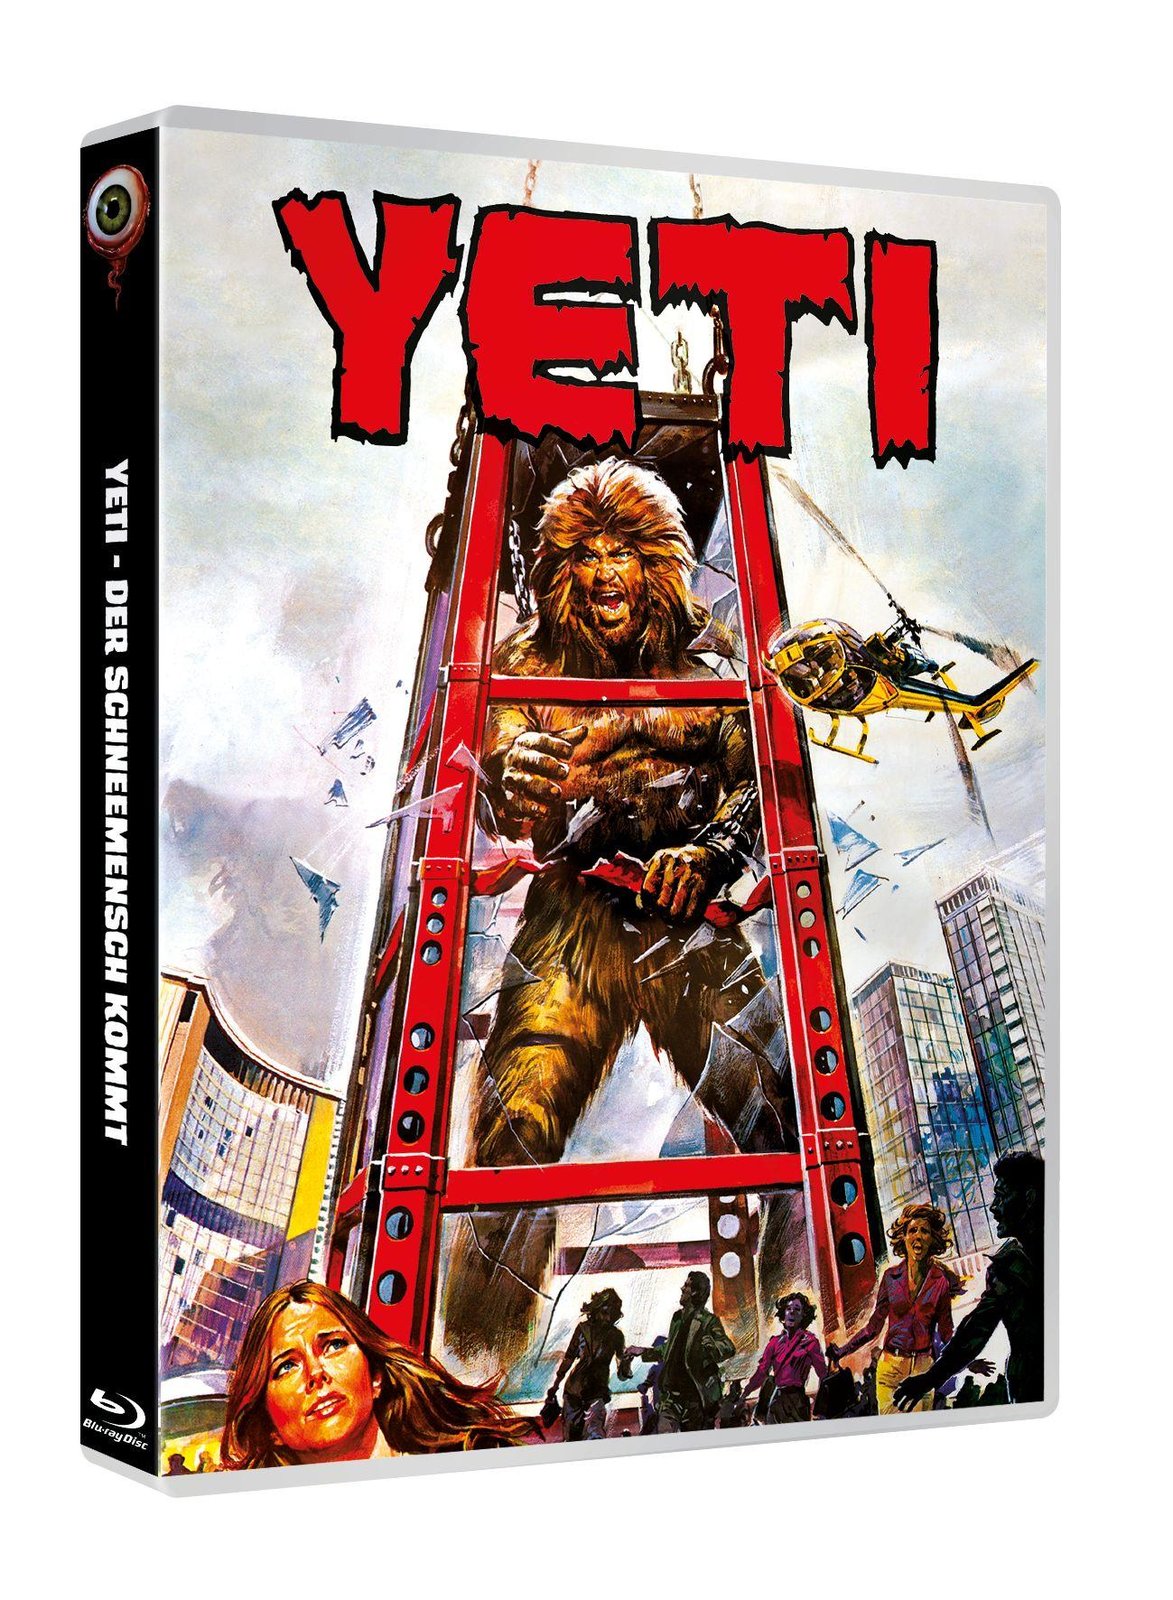 Yeti - Der Schneemensch kommt - Uncut Mediabook Edition (DVD+blu-ray)